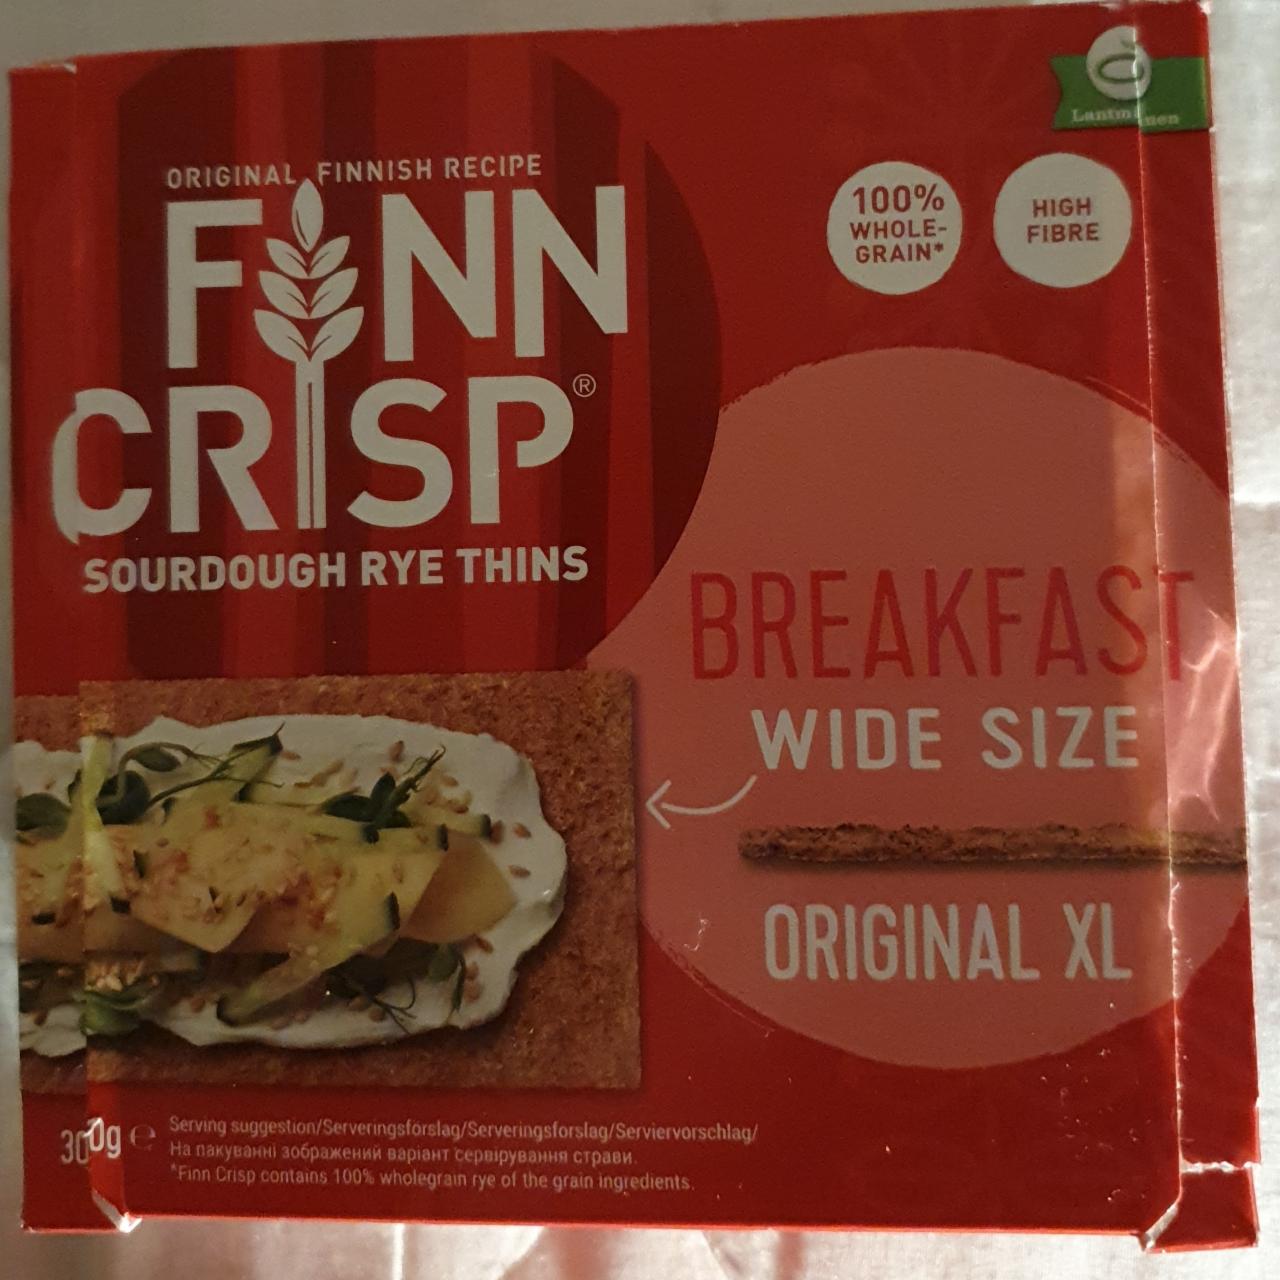 Zdjęcia - Breakfast wide size rye thins Finn Crisp